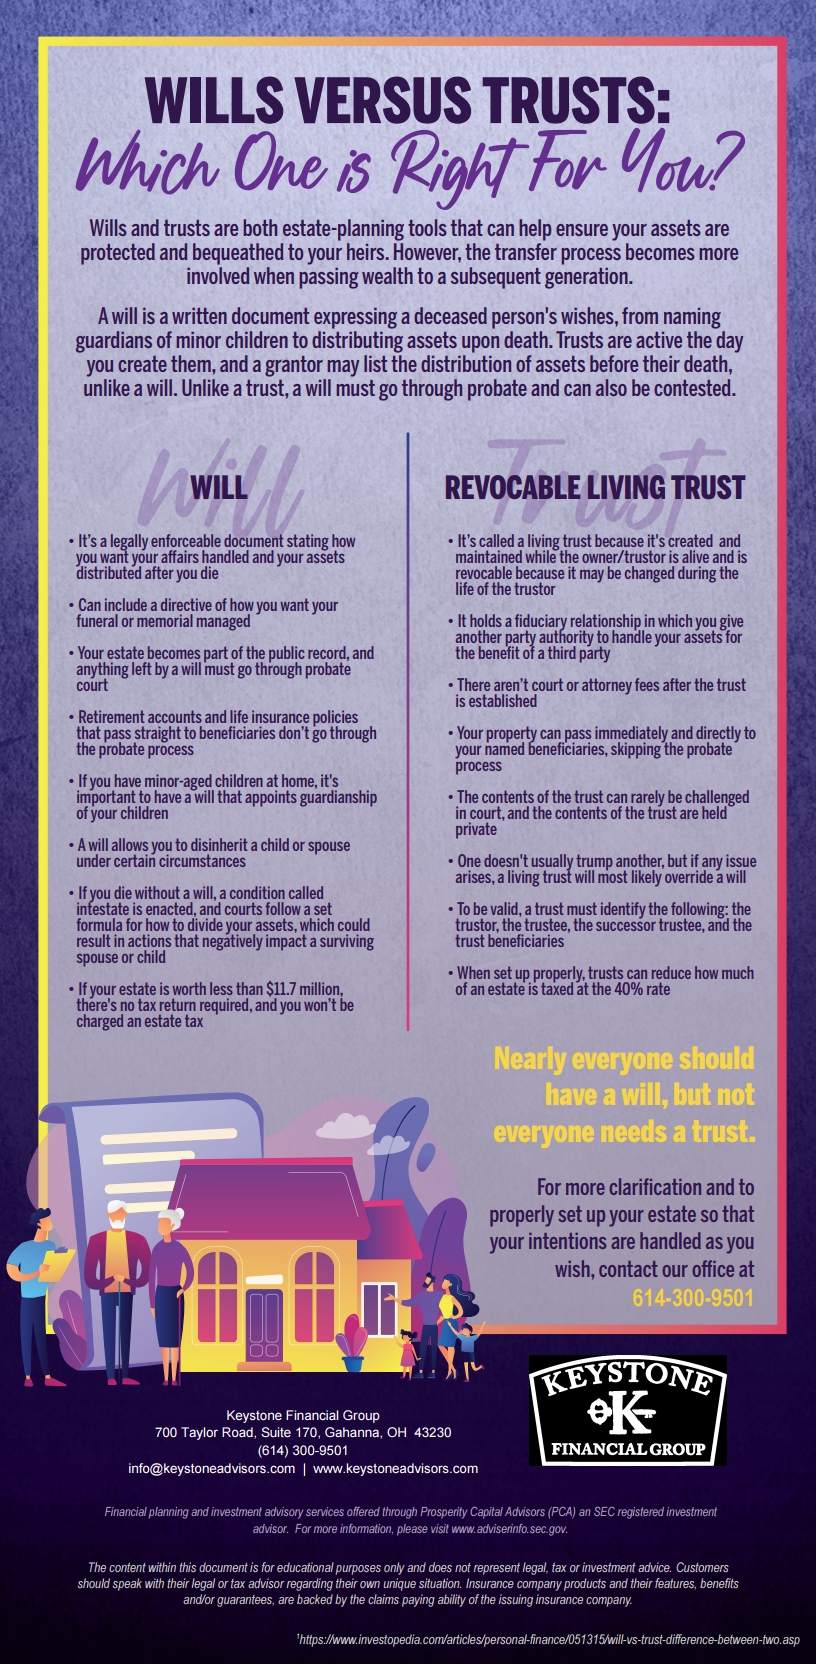 Wills versus trusts